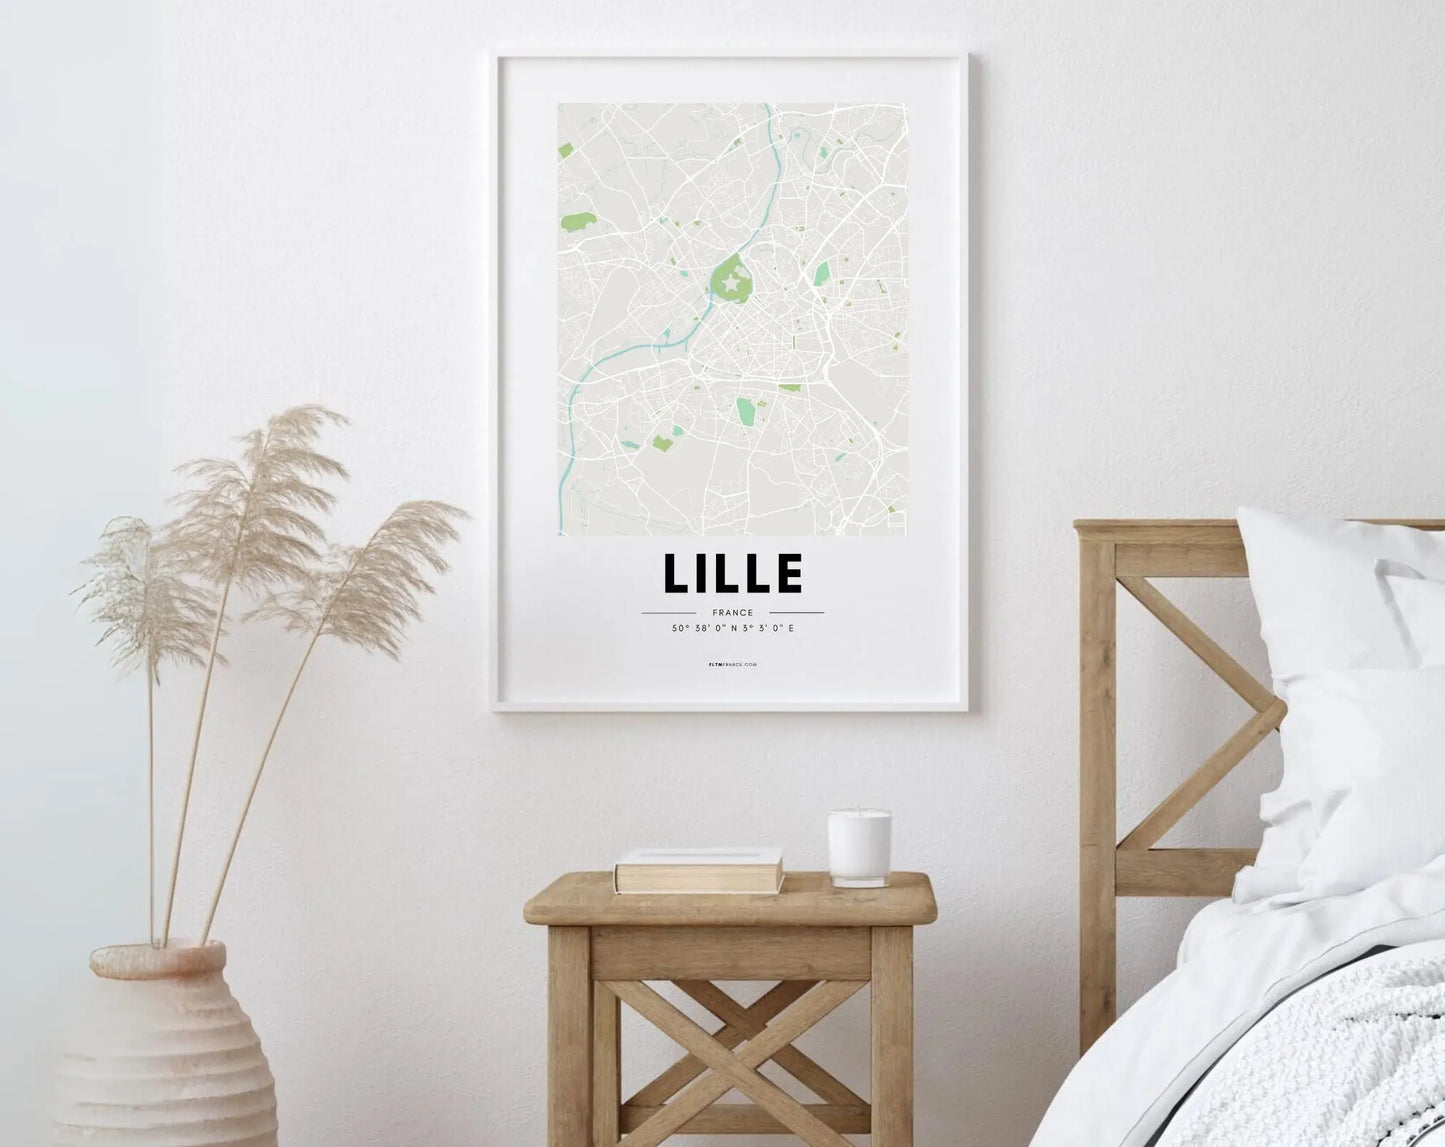 Affiche carte Lille - Villes de France FLTMfrance